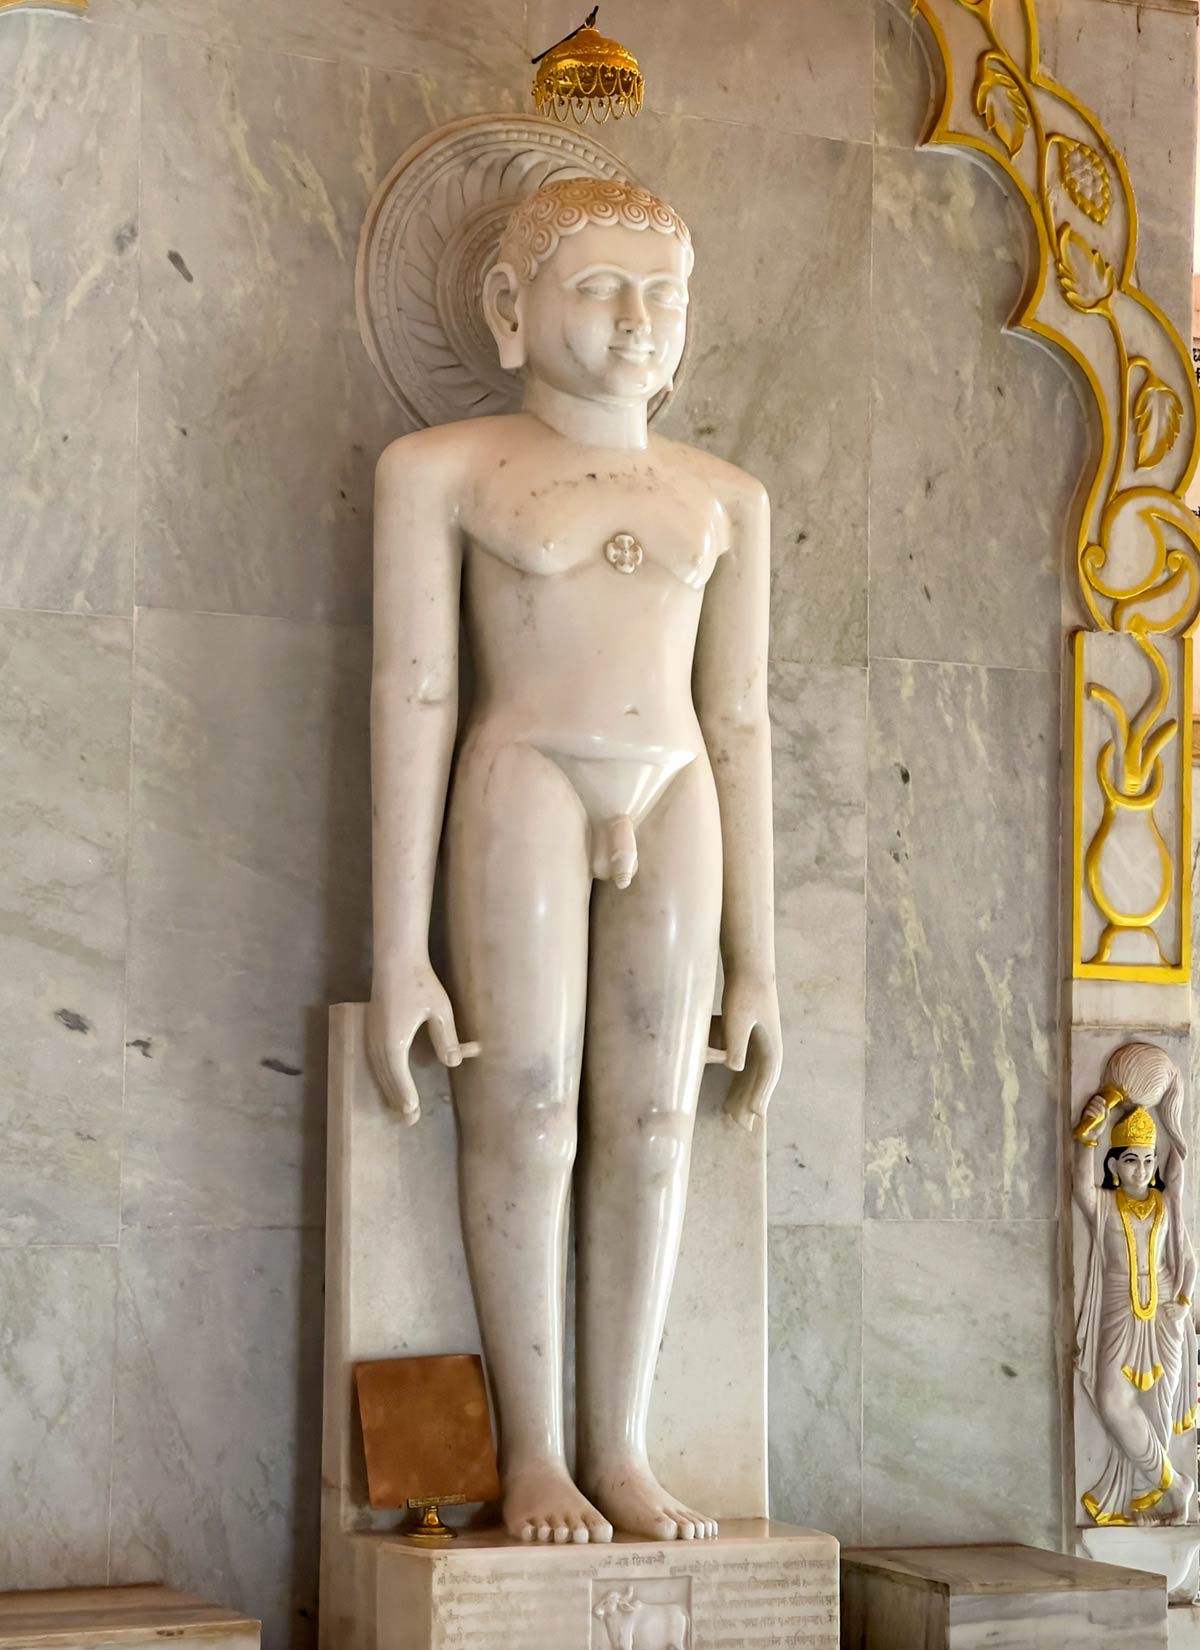 मंदार हिल, बौंसी, हिलटॉप मंदिर में 12वें जैन तीर्थंकर की प्रतिमा